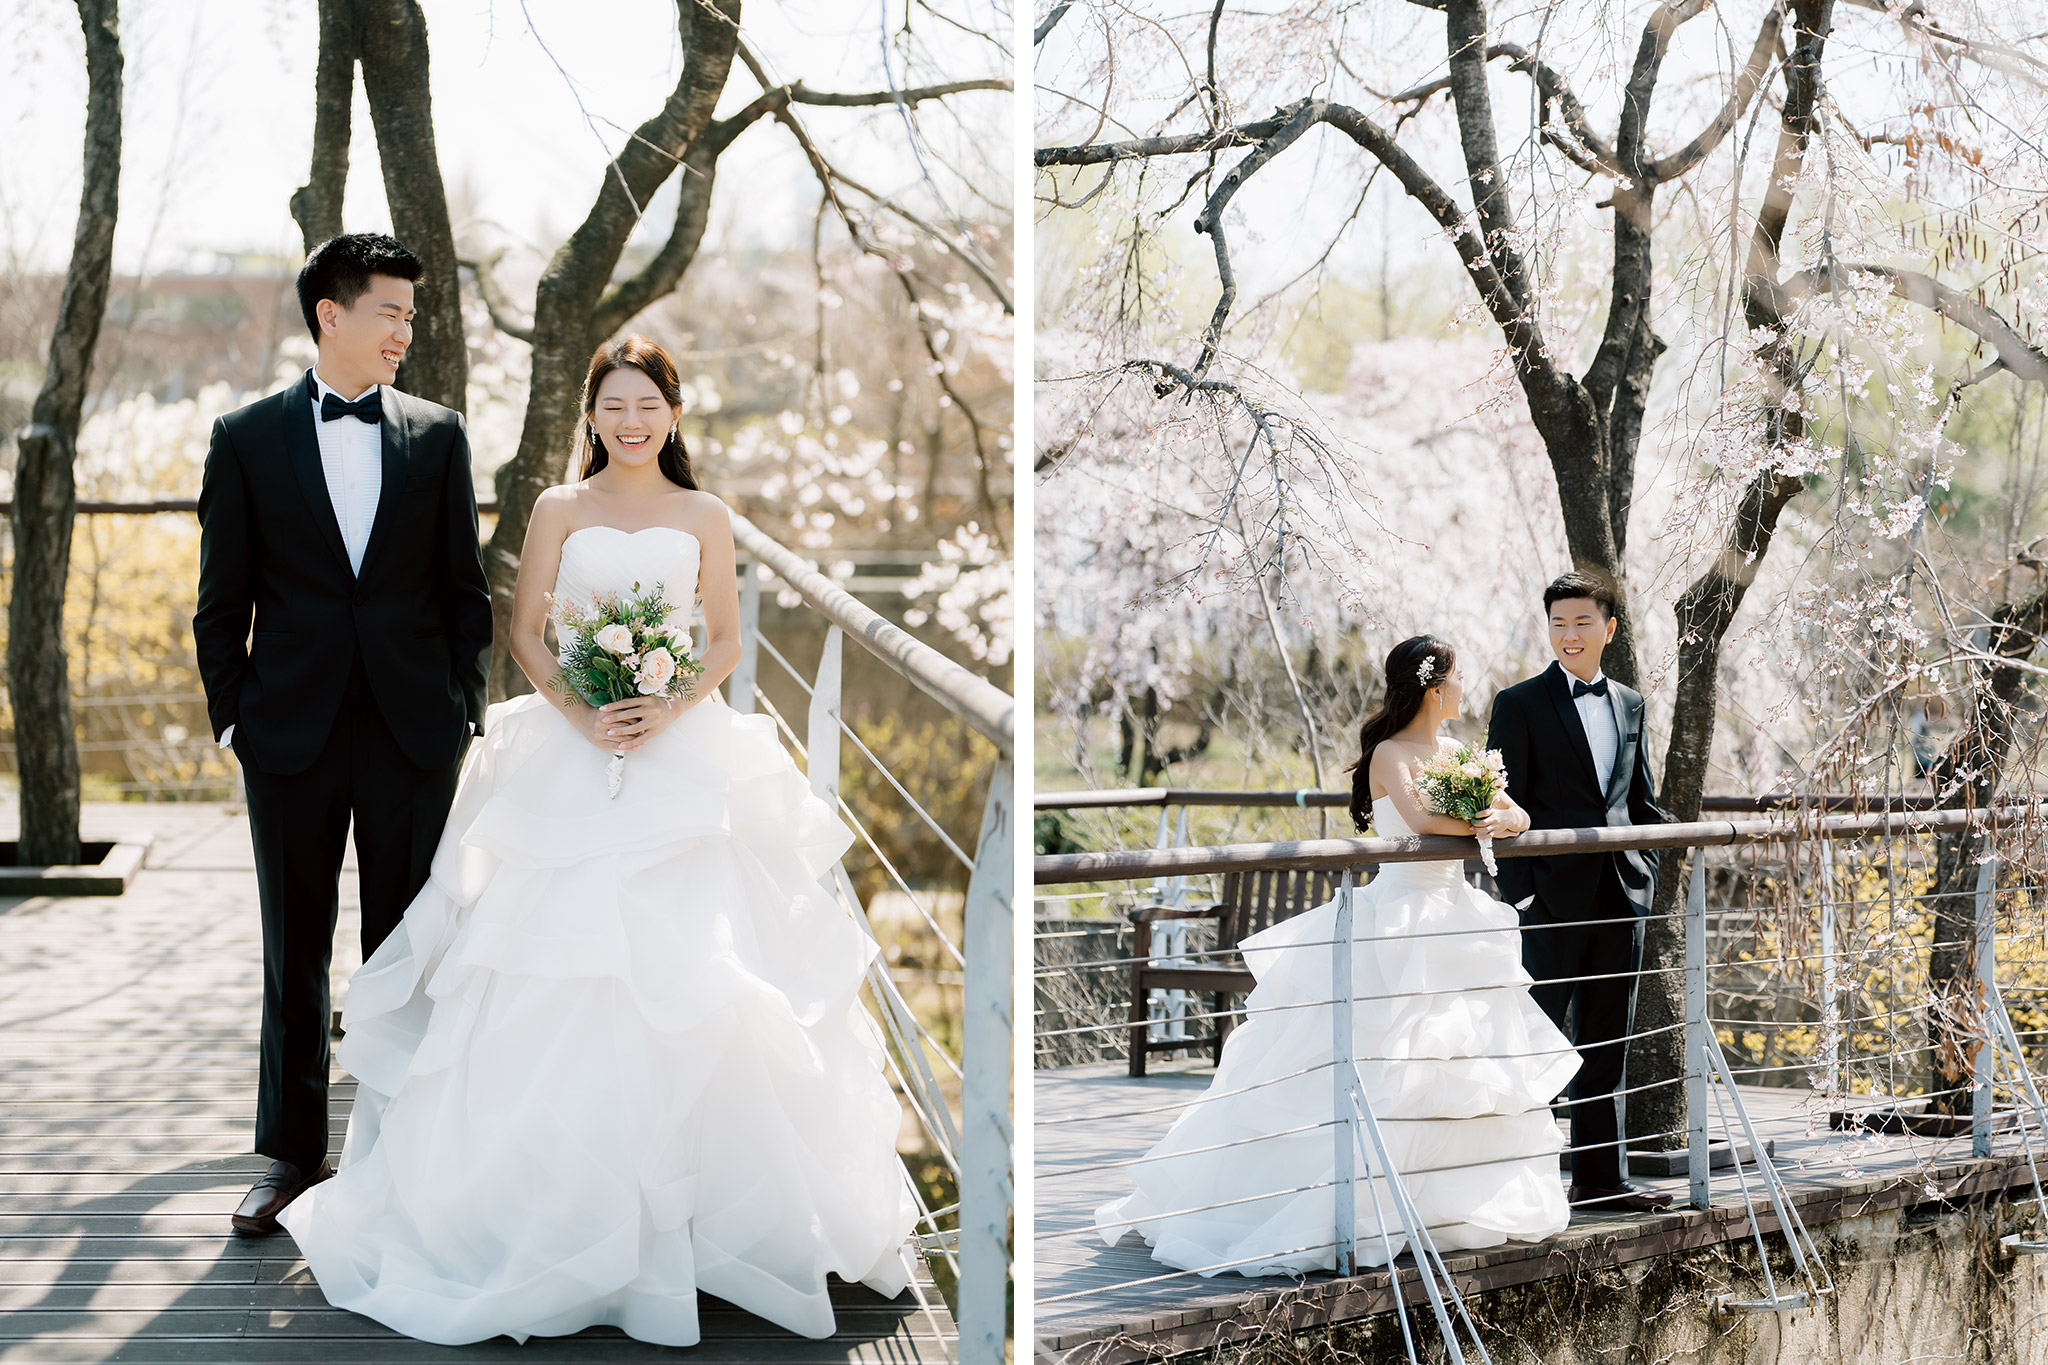 韓國首爾櫻花季婚紗拍攝 仙遊島公園和南山谷韓屋村 by Jungyeol on OneThreeOneFour 1